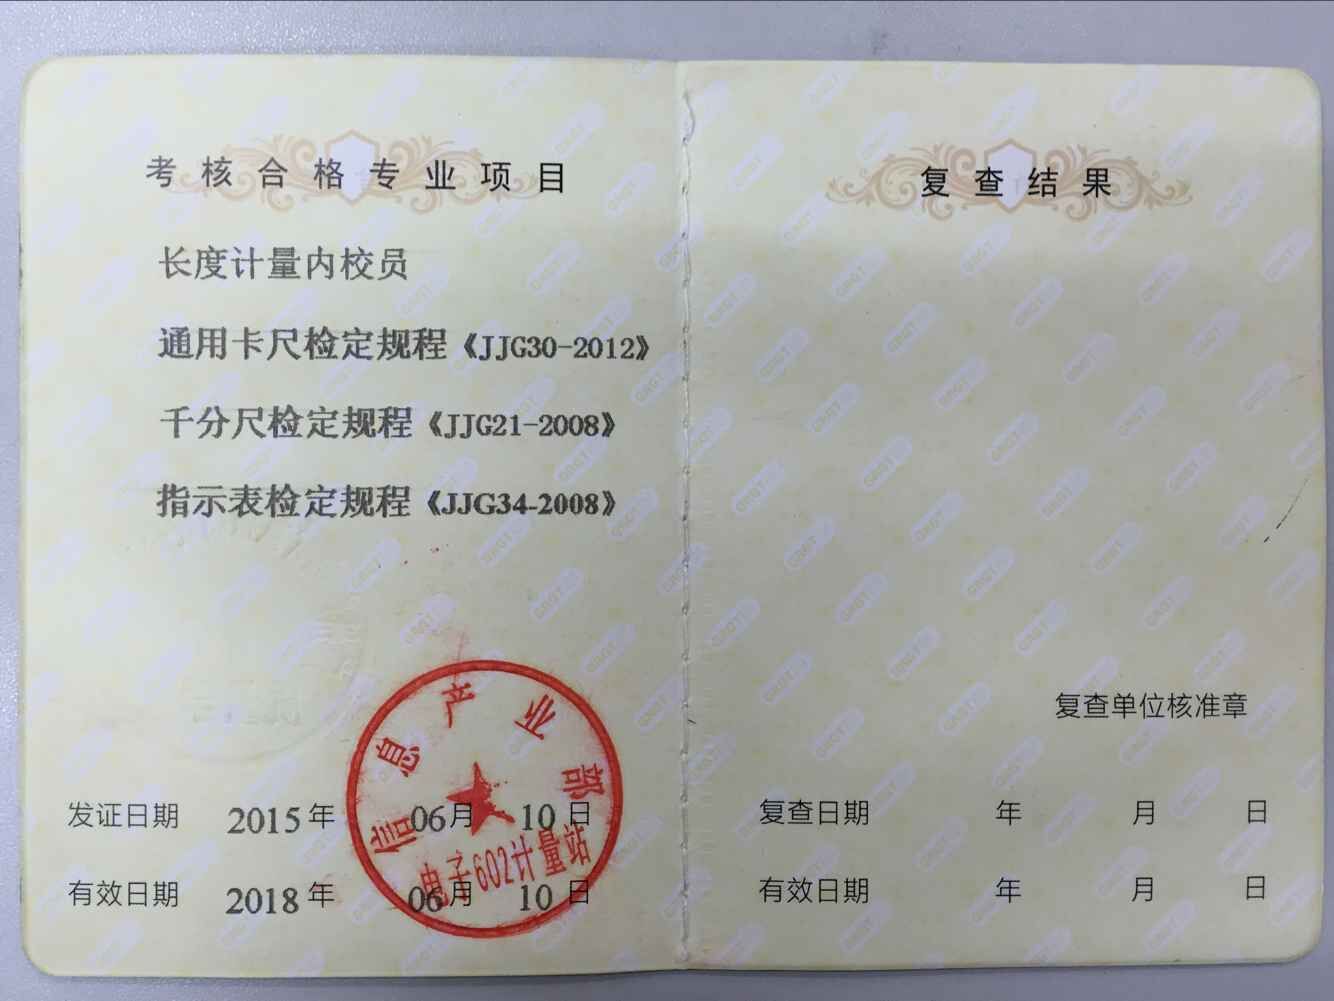 上海无锡内校员校准计量证书培训报名